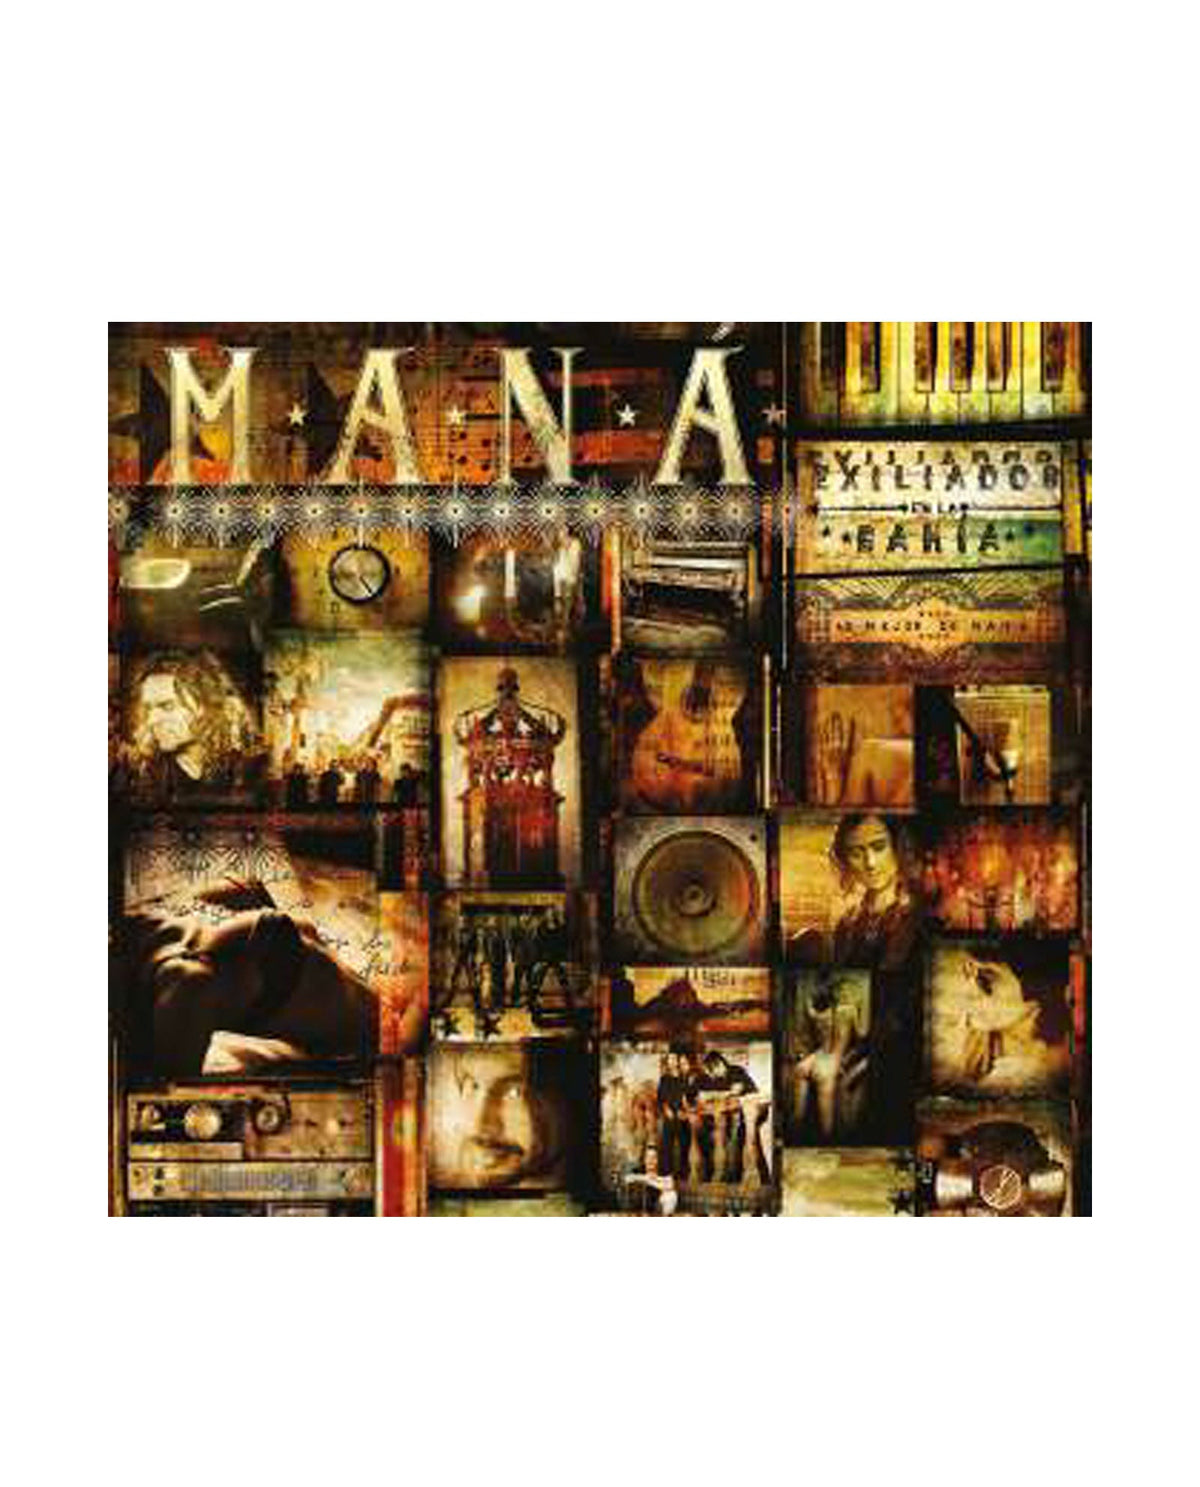 Maná - 2CD "Exiliados en la Bahía" - D2fy · Rocktud - Rocktud